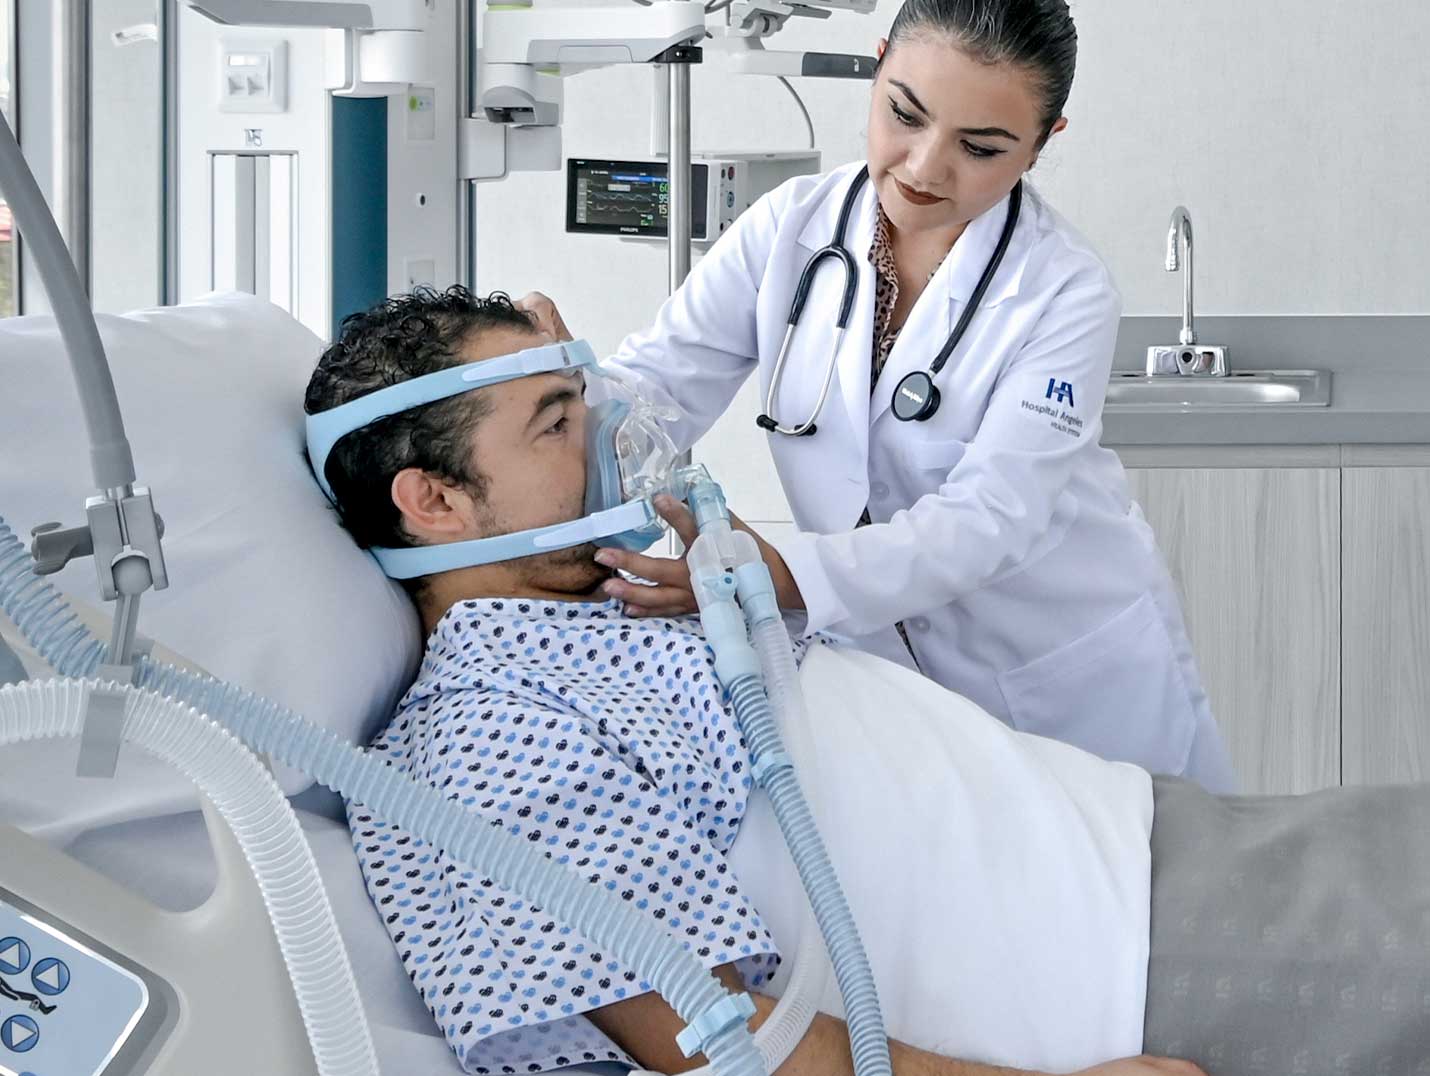 Doctora de Hospital Angeles con una bata blanca, colocando una máscara de oxígeno a un paciente que se encuentra internado